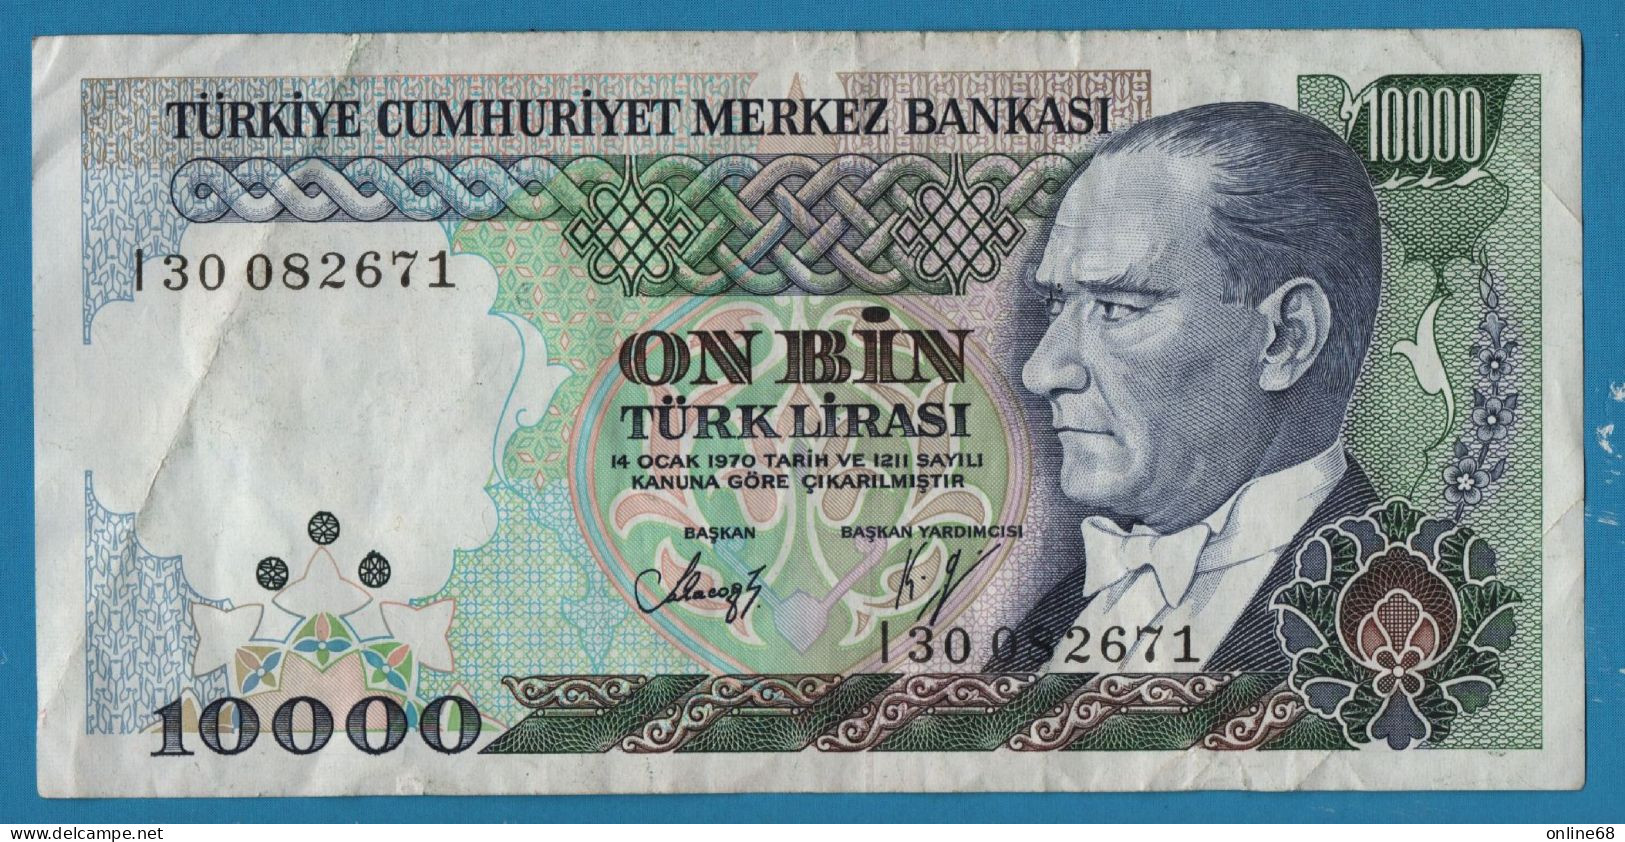 TURKEY 10.000 LIRASI L. 1970 # I300822671 P# 200 Atatürk  Architect Mımar Sinan - Turchia